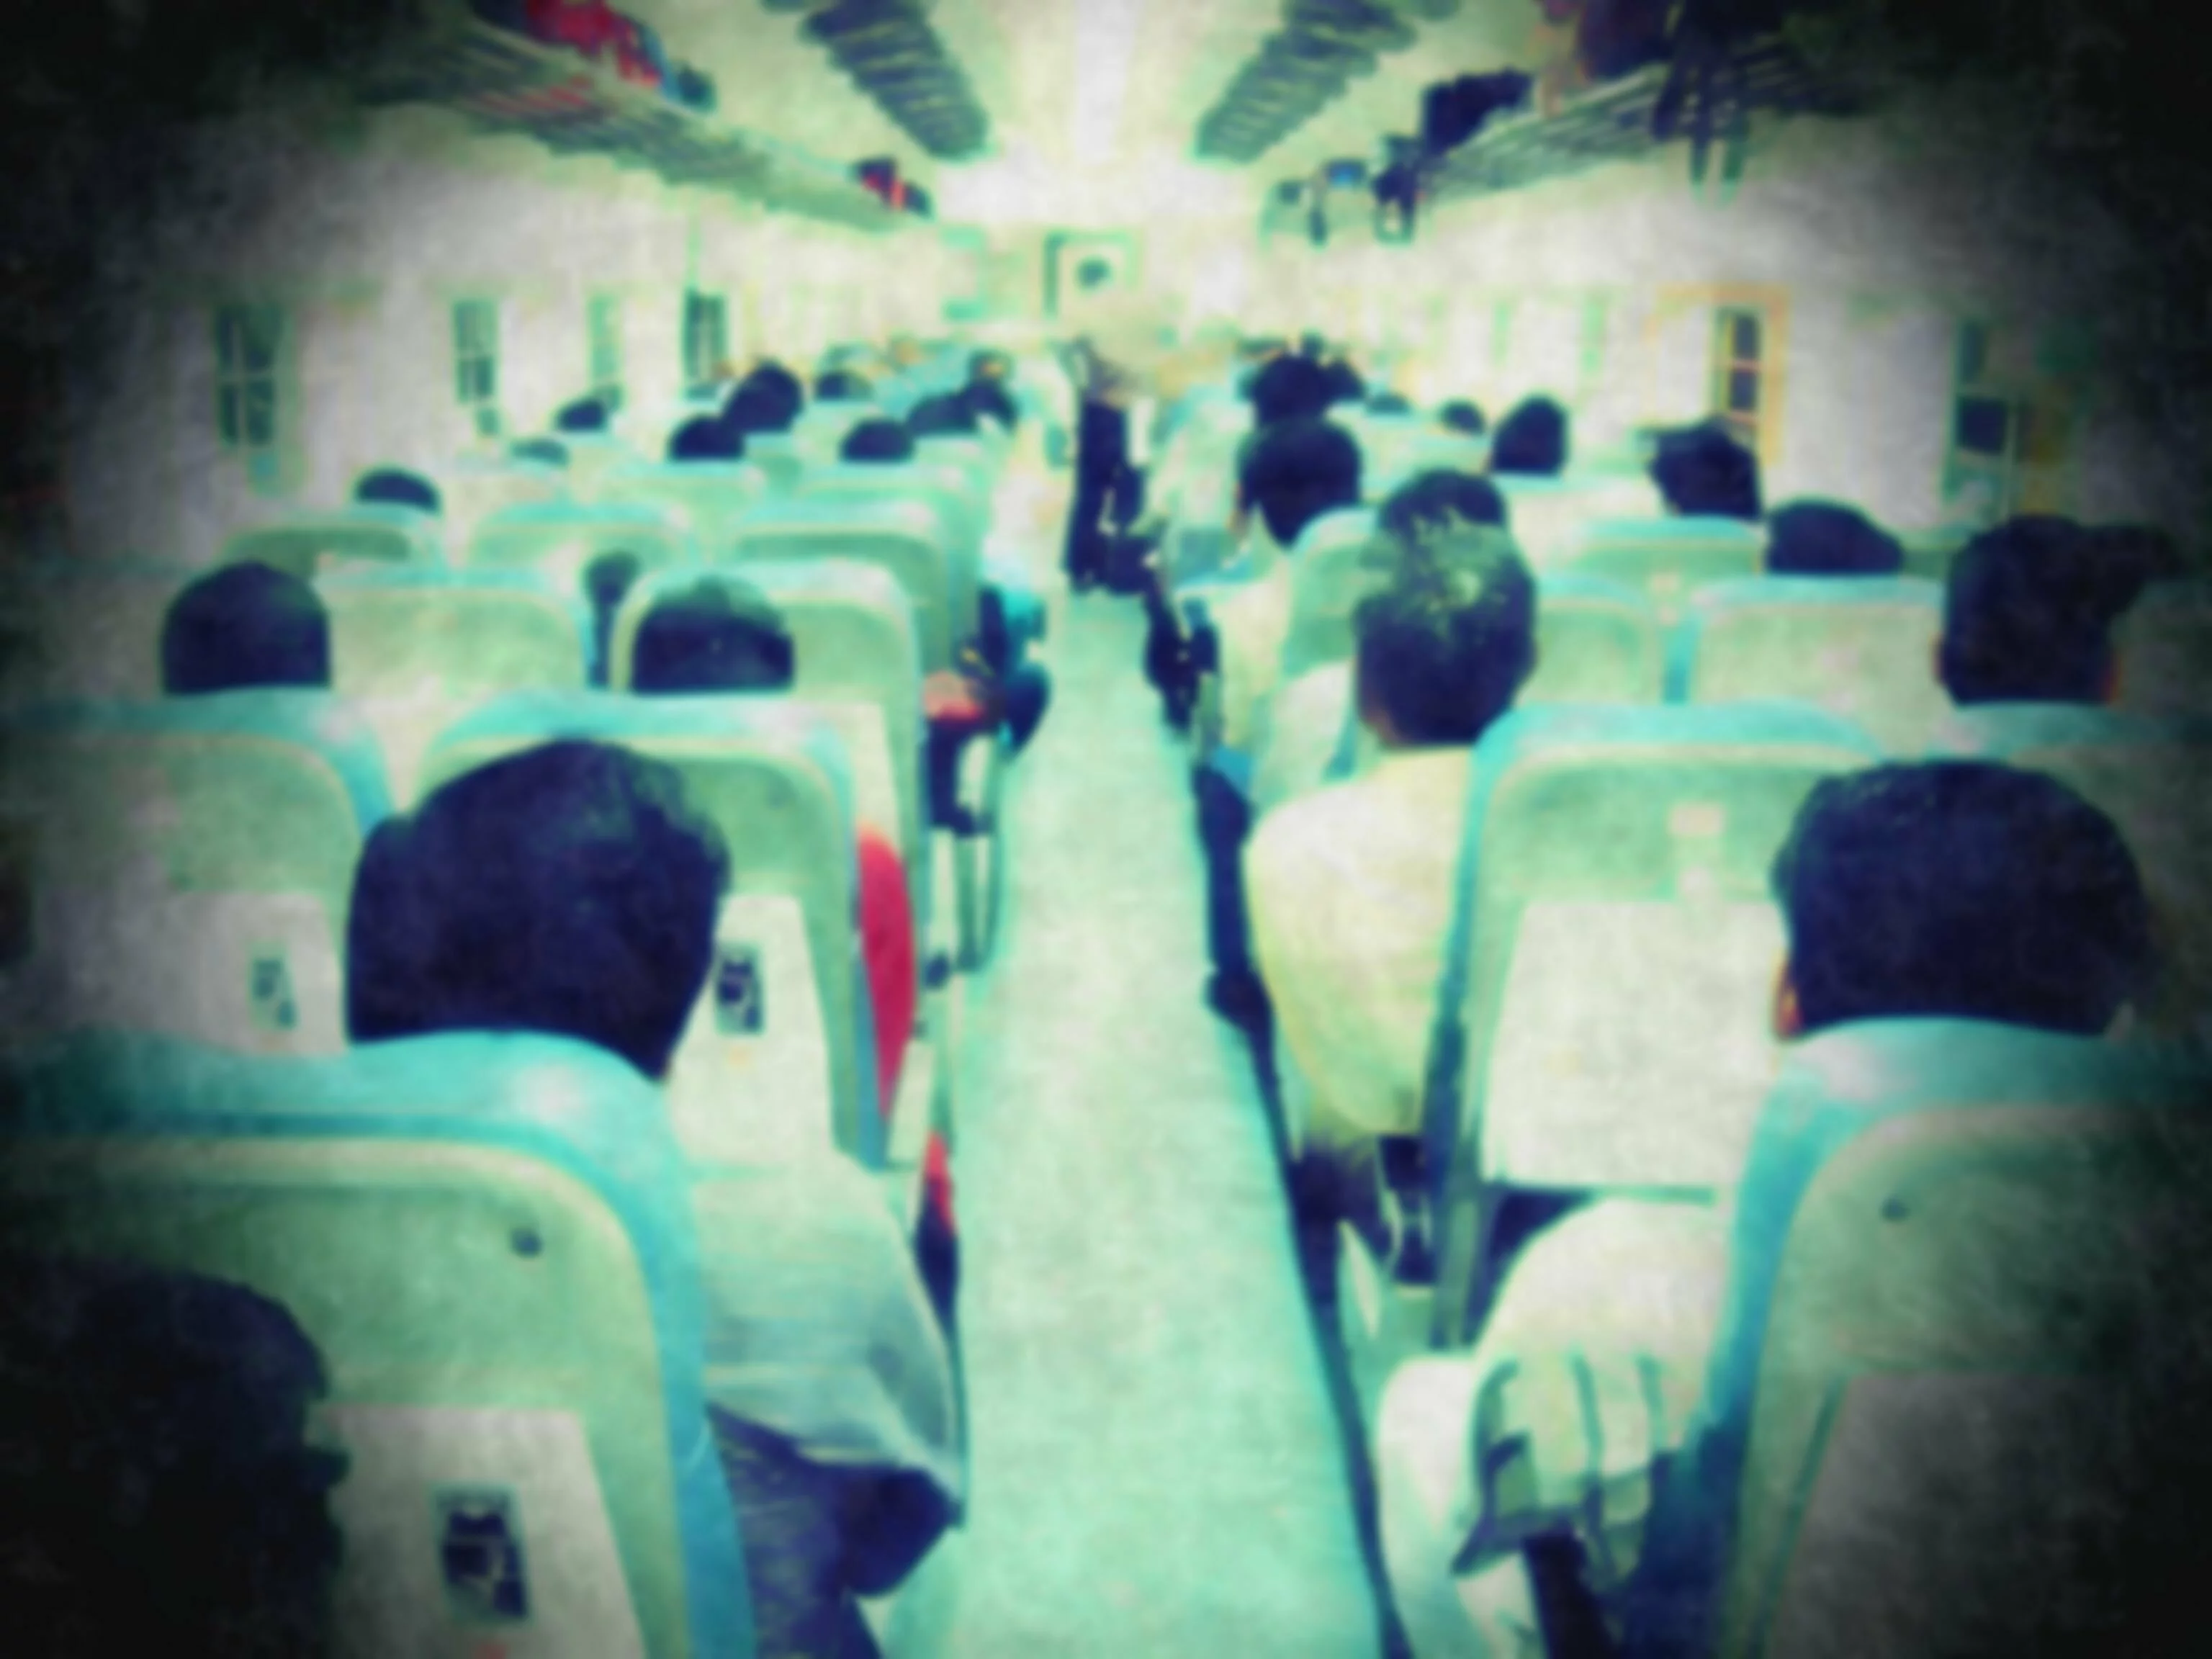 In a train